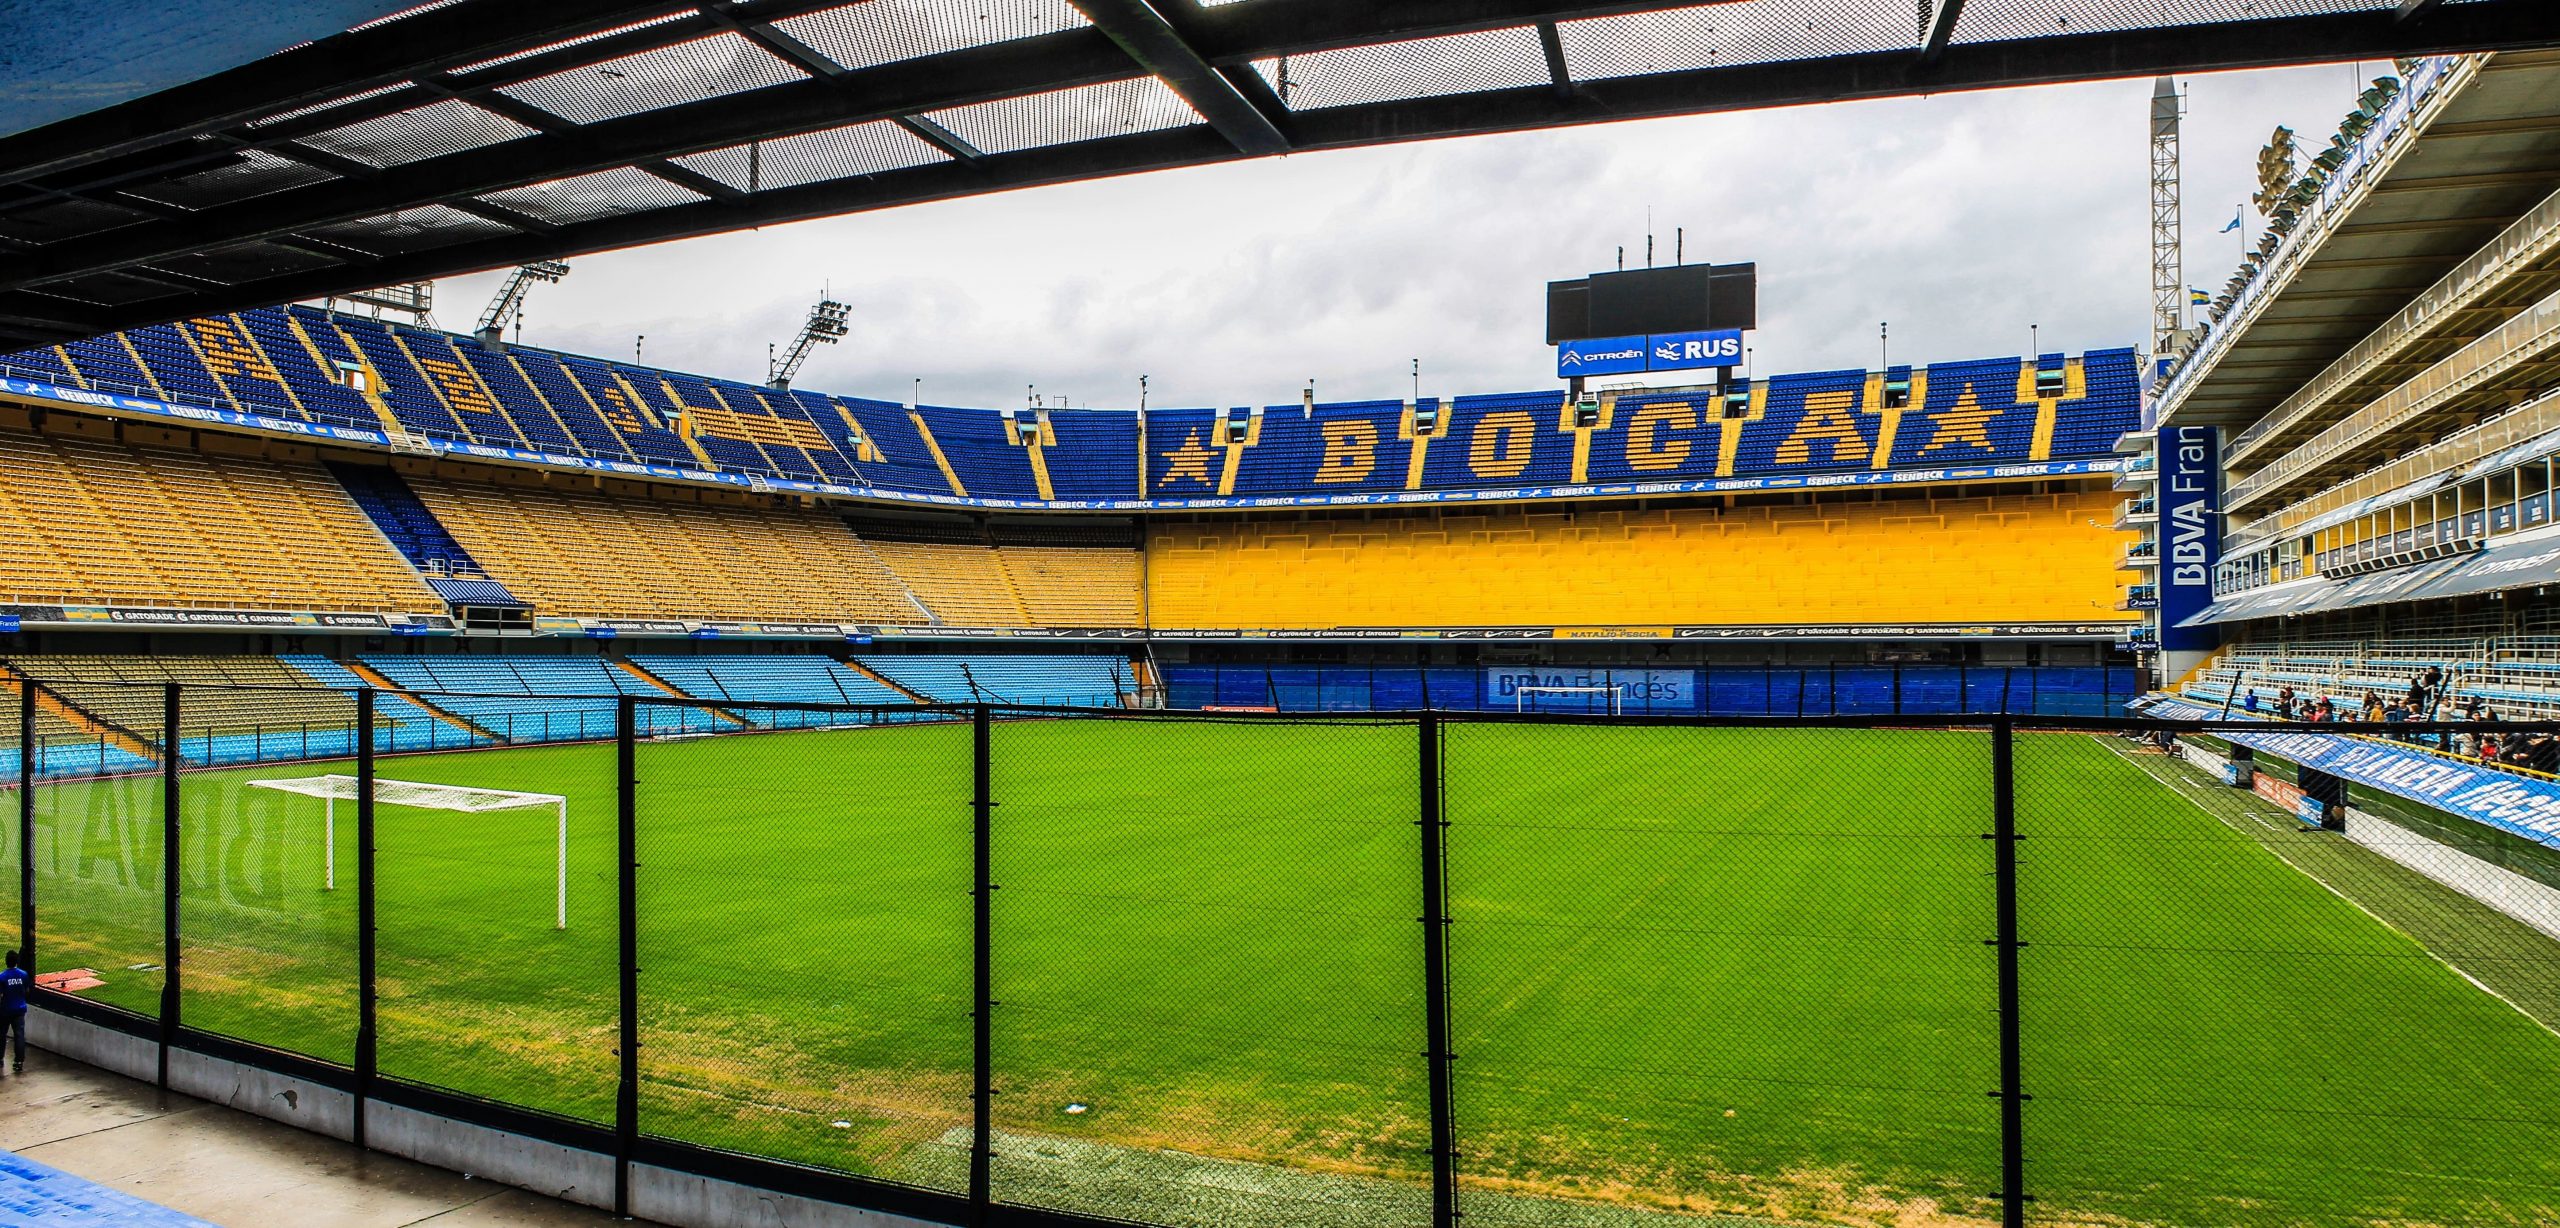 La Bombonera football stadium